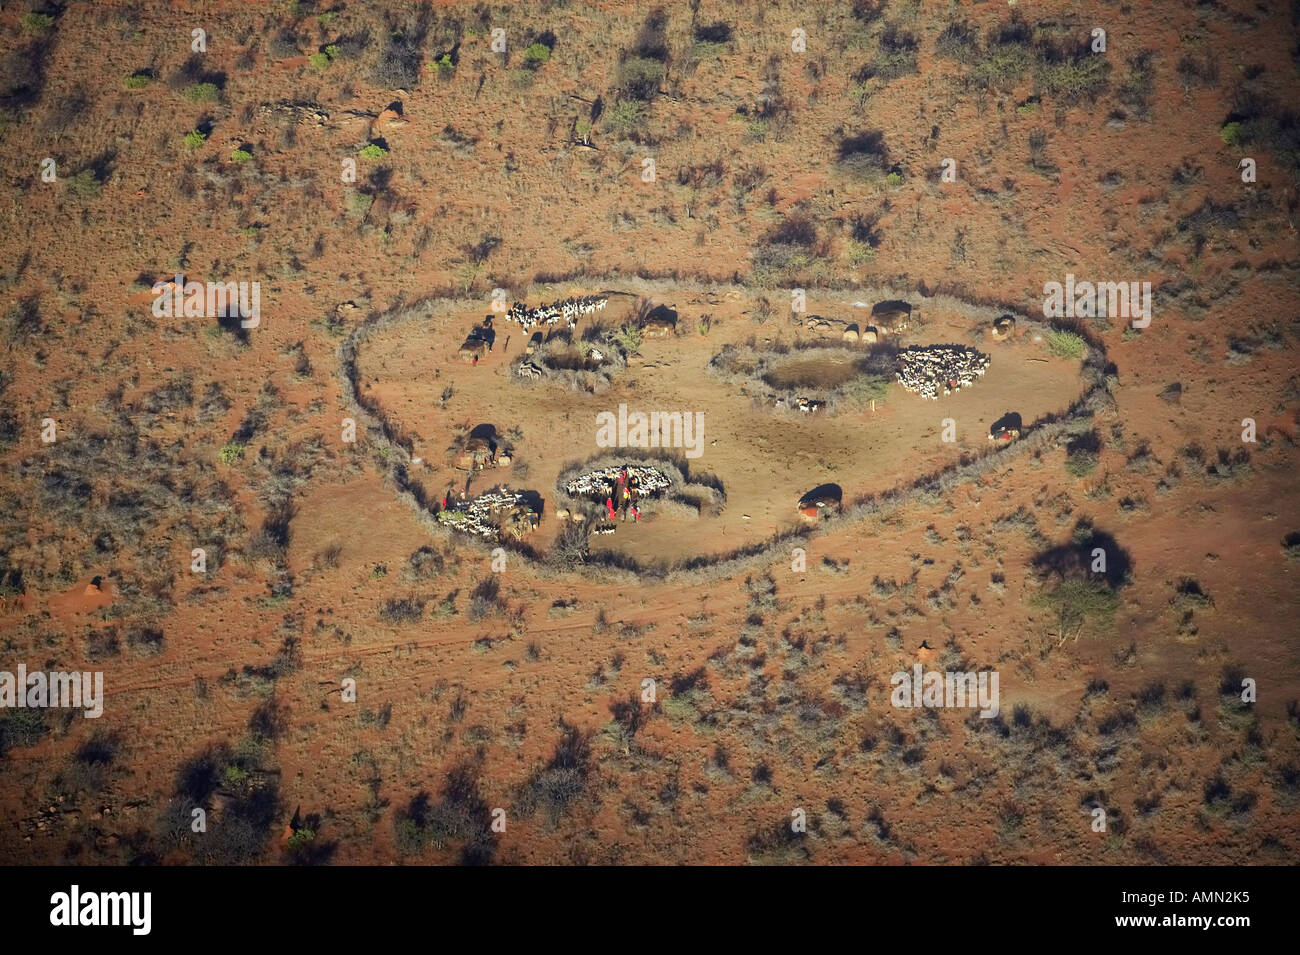 Vue aérienne de Masai village dans la nature et les troupeaux de chèvres du cercle près de Lewa Conservancy Kenya Afrique Banque D'Images